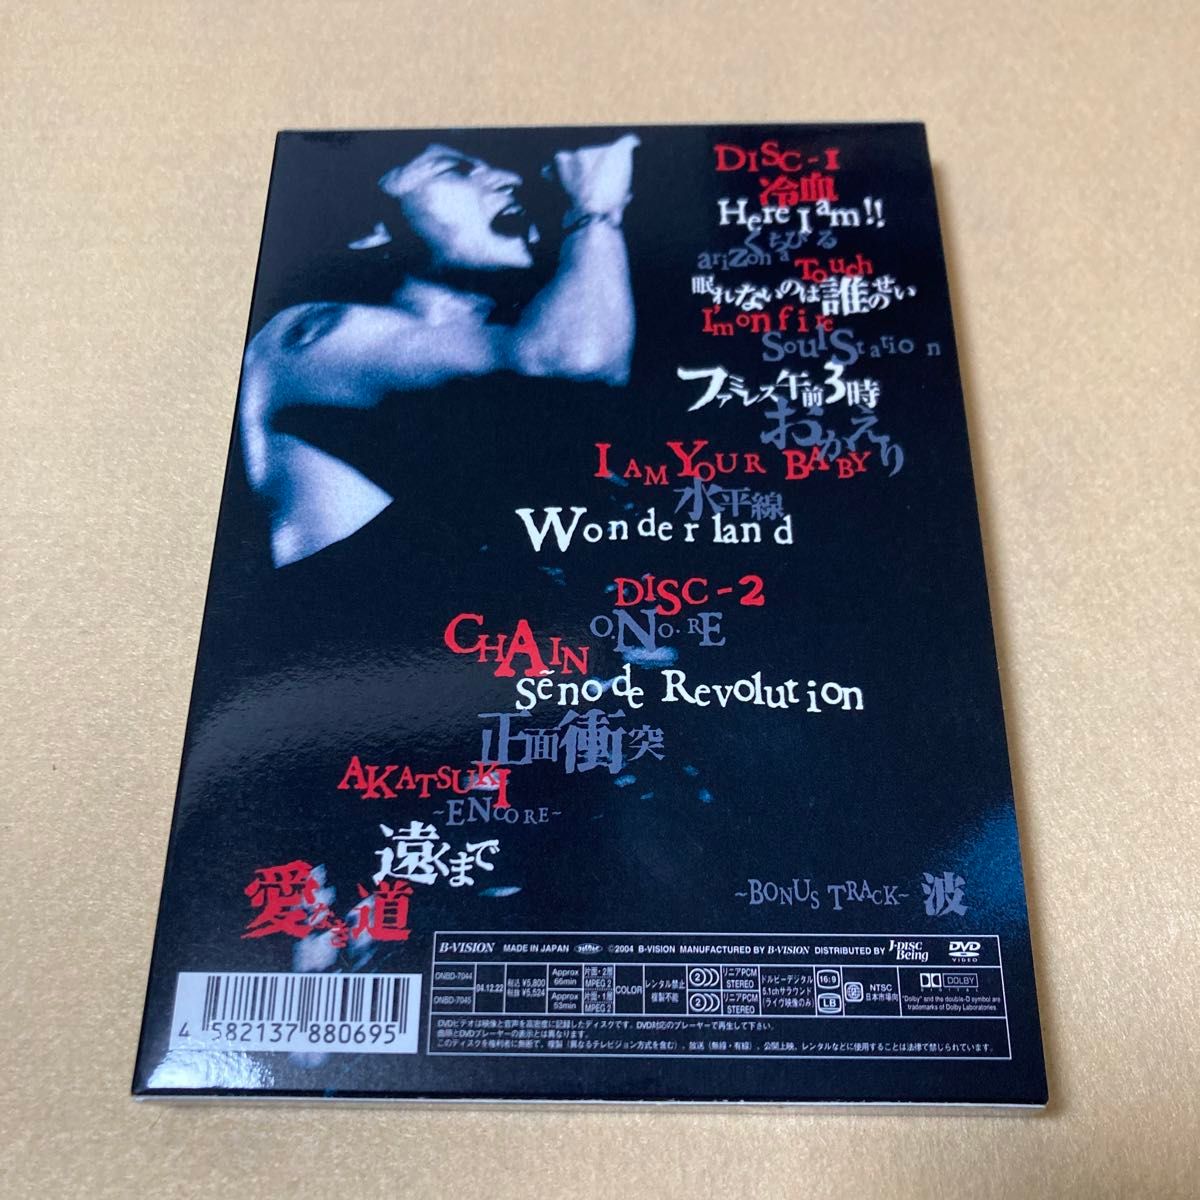 (DVD) 稲葉浩志「LIVE 2004 ～en～〈2枚組〉」 B'z